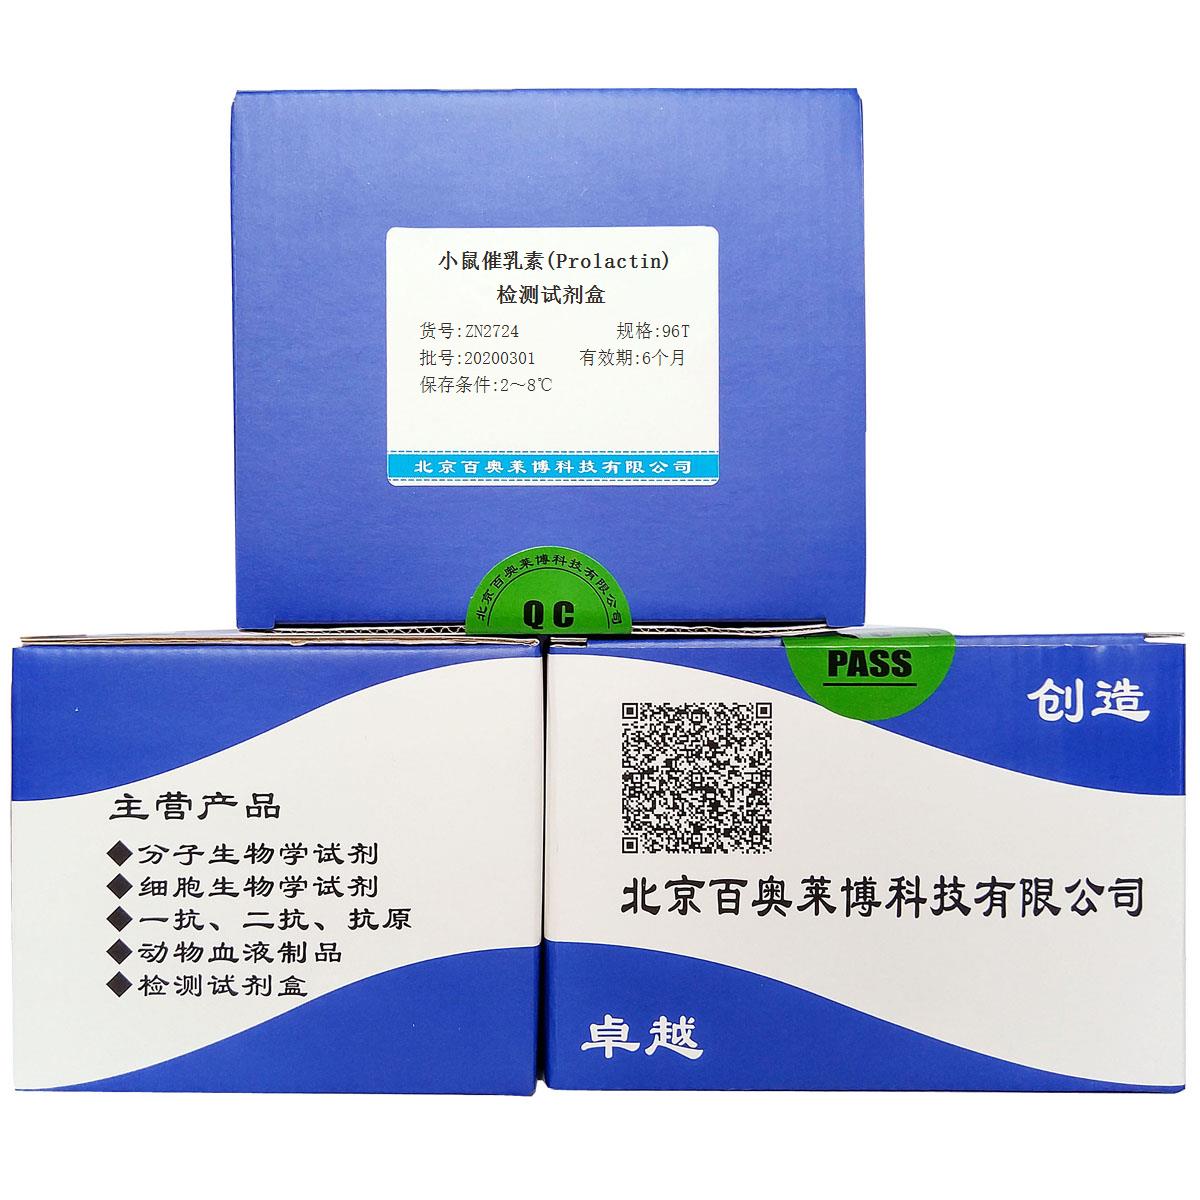 小鼠催乳素(Prolactin)检测试剂盒